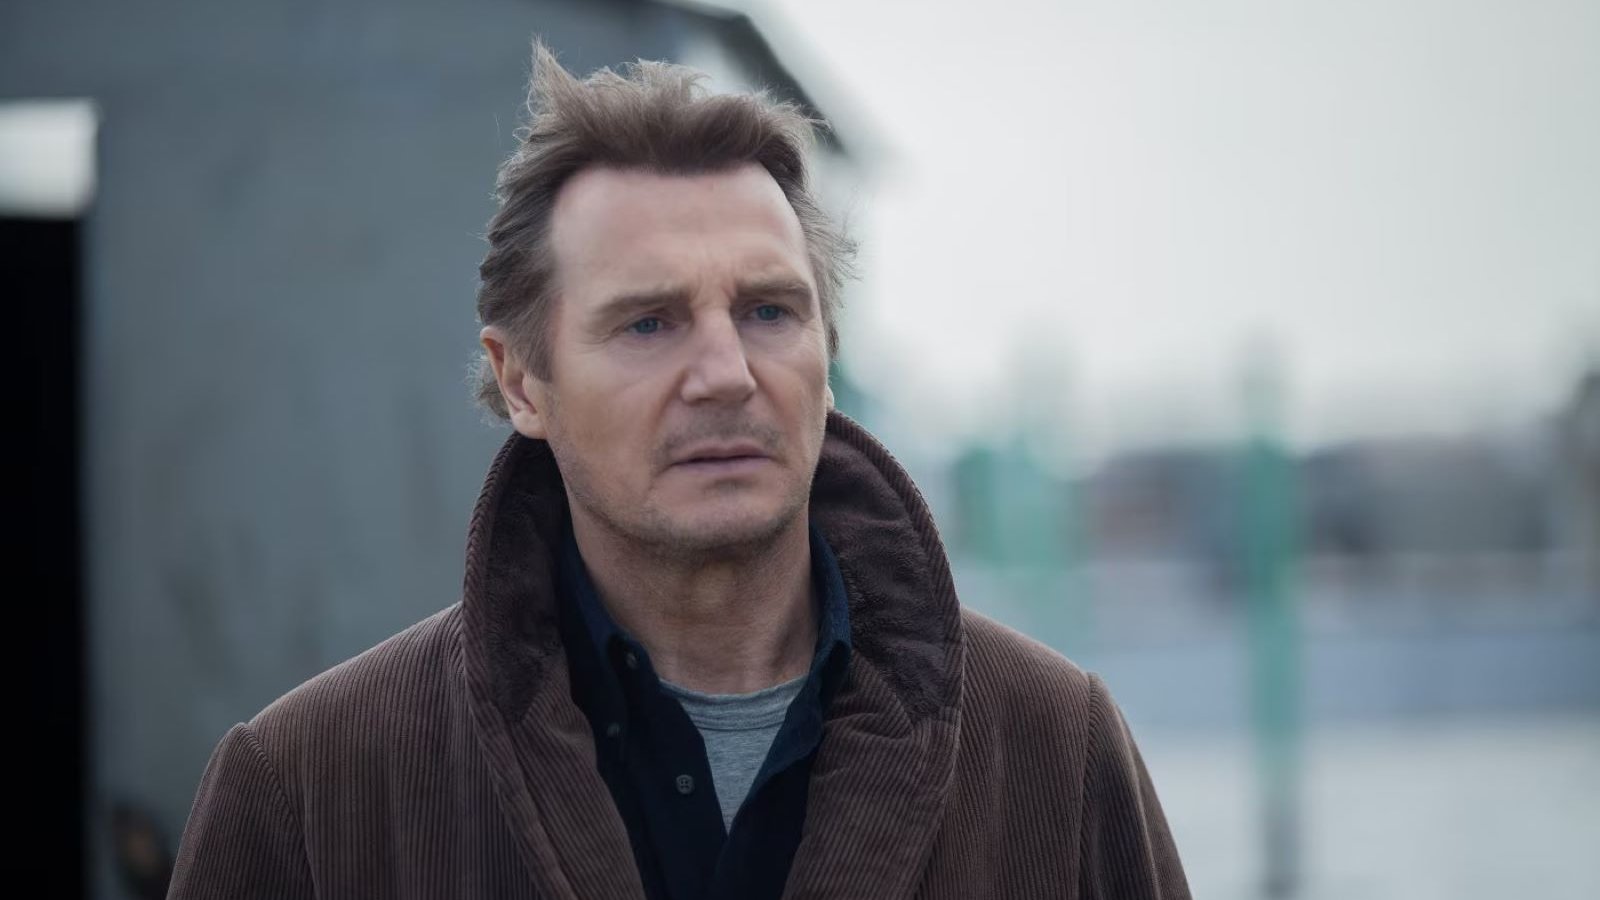 La preda perfetta, stasera su 20 Mediaset: trama e cast del film con Liam Neeson